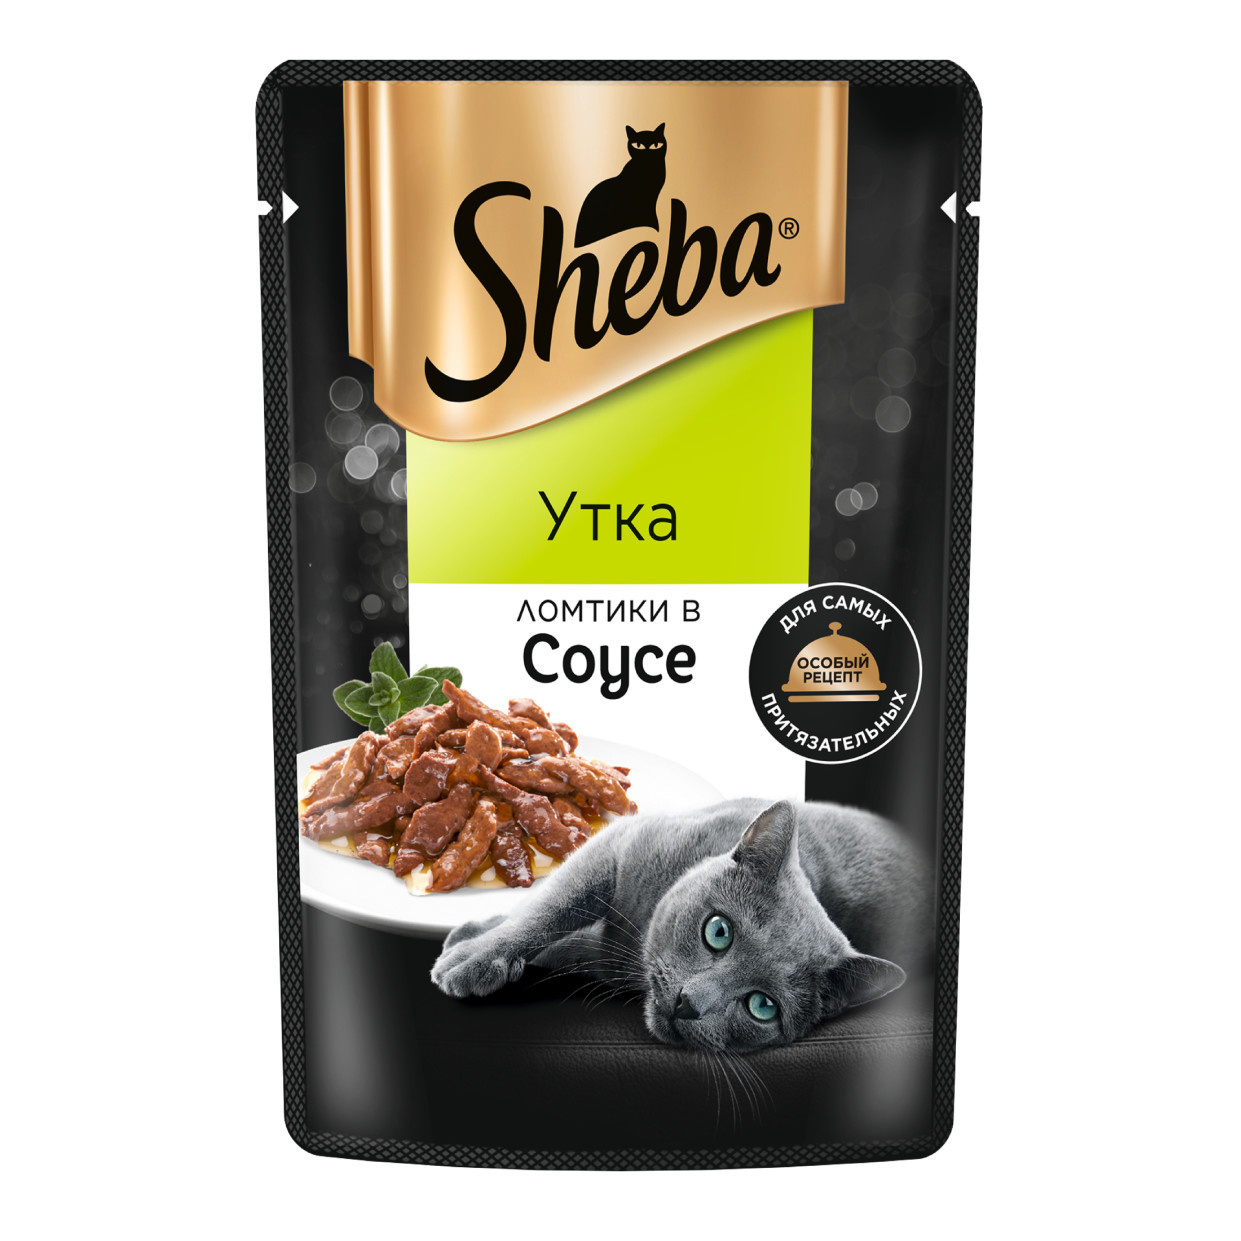 Sheba влажный корм для кошек «Ломтики в соусе с уткой» (75 г)